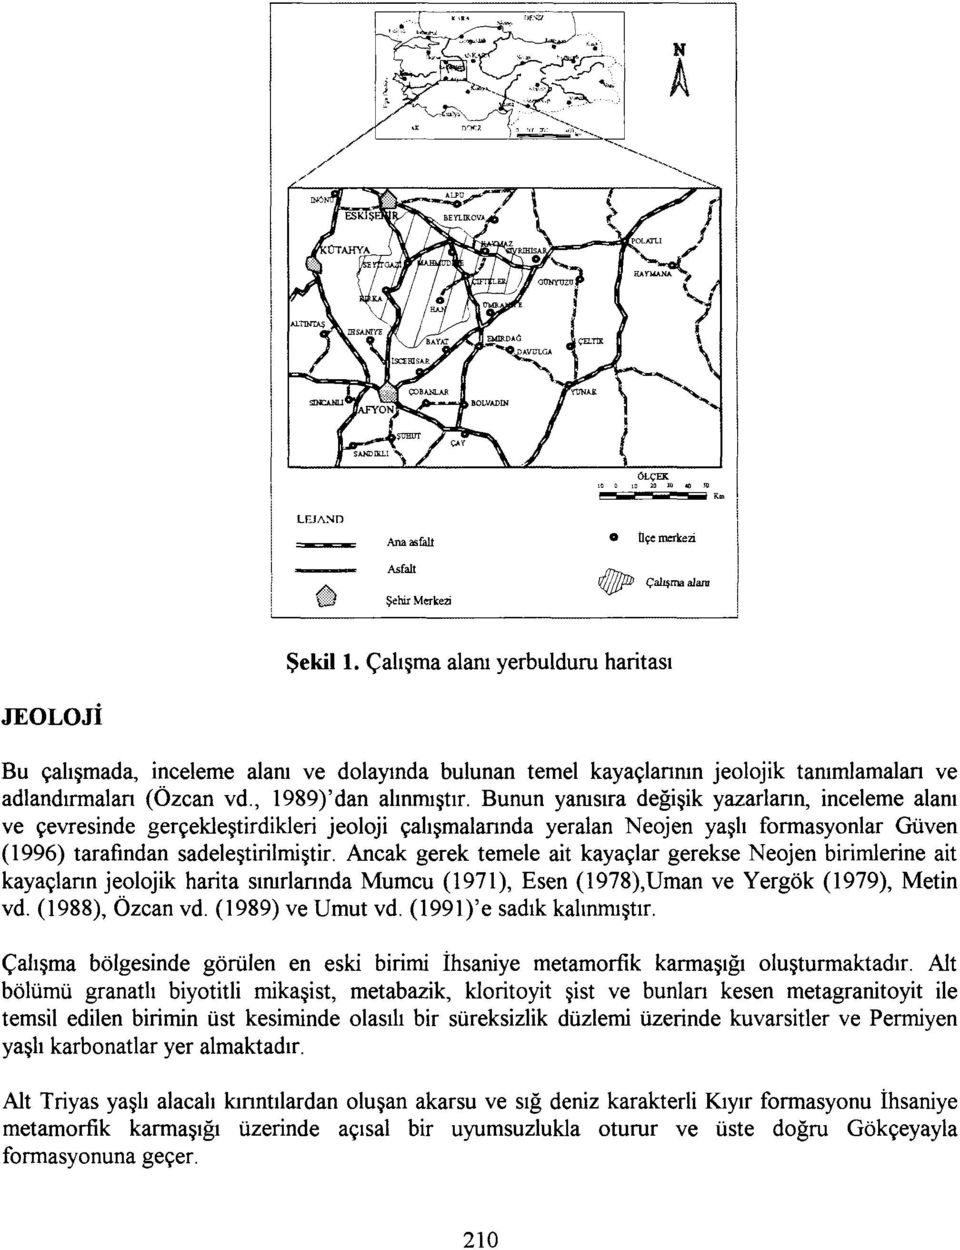 Ancak gerek temele ait kayaçlar gerekse Neojen birimlerine ait kayaçlann jeolojik harita sınırlarında Mumcu (1971), Esen (1978),Uman ve Yergök (1979), Metin vd. (1988), Özcan vd. (1989) ve Umut vd.